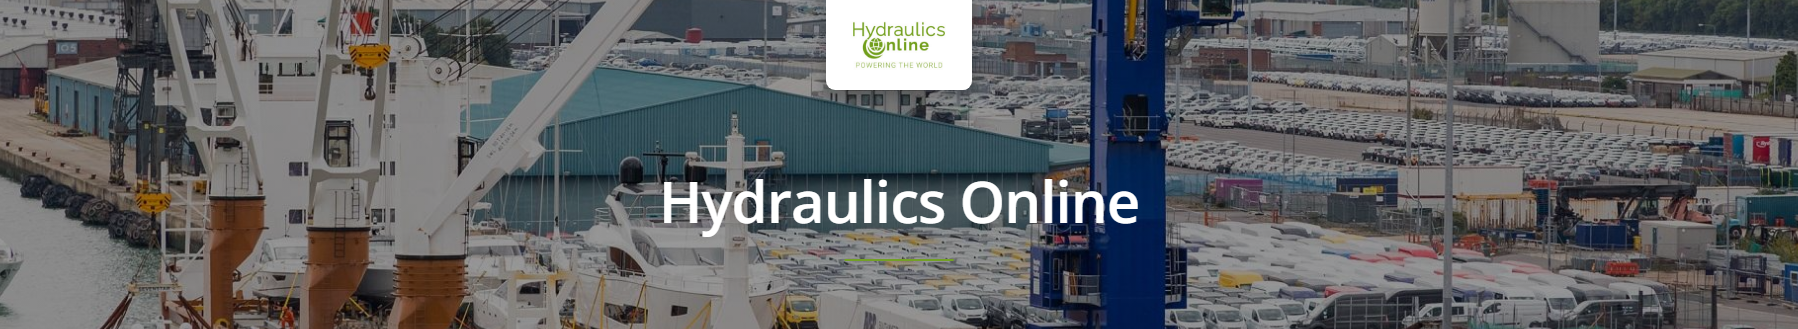 Hydraulics Online Motors